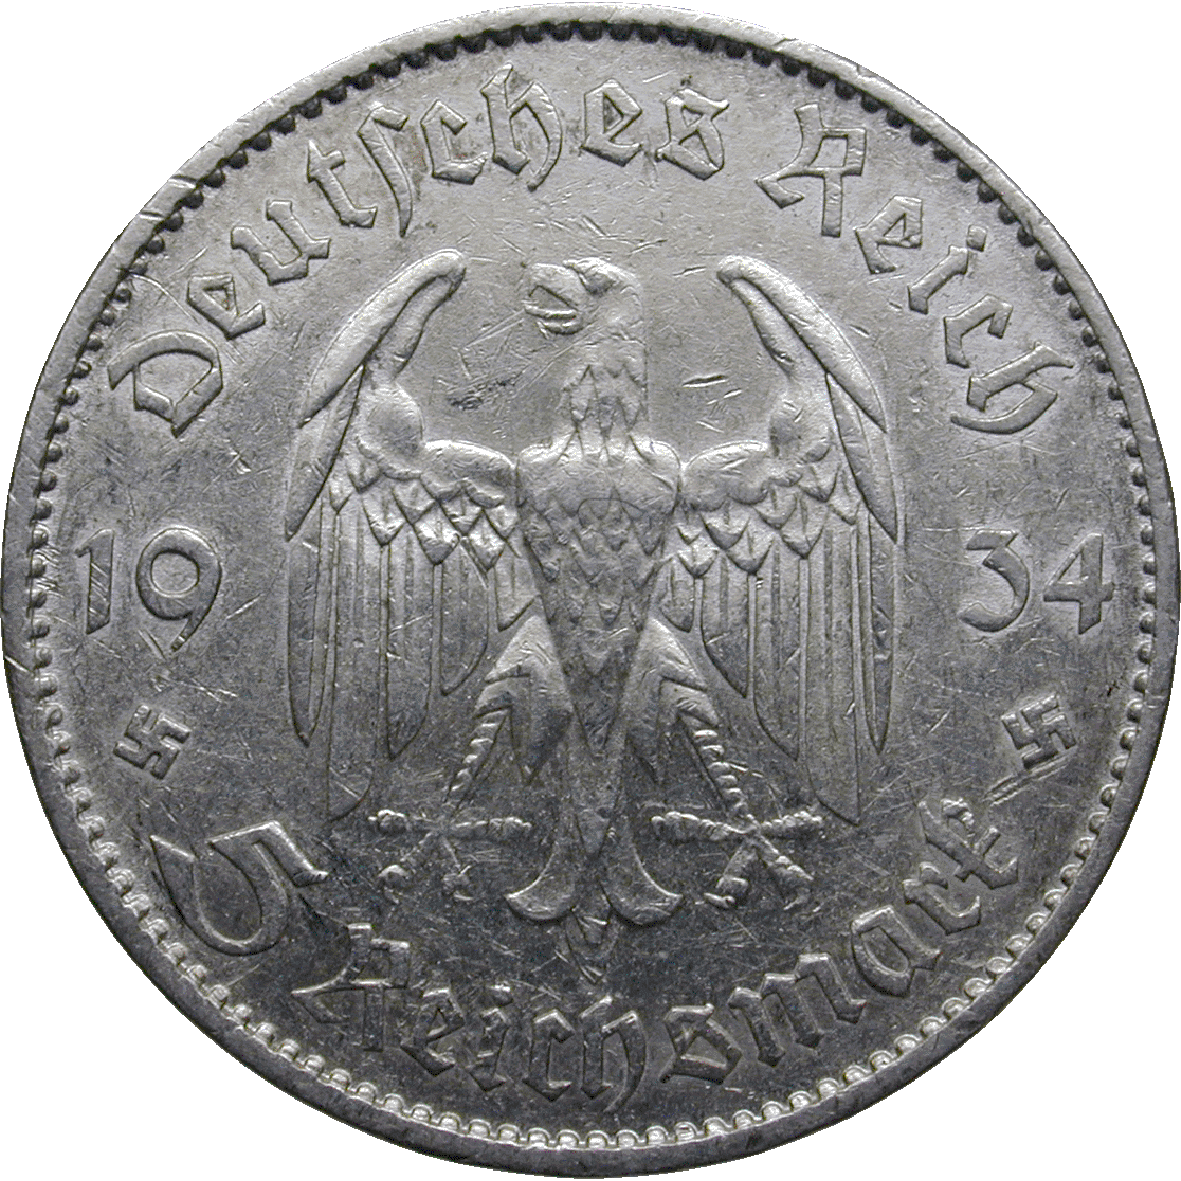 German Third Empire, 5 Reichsmark 1934 (obverse)